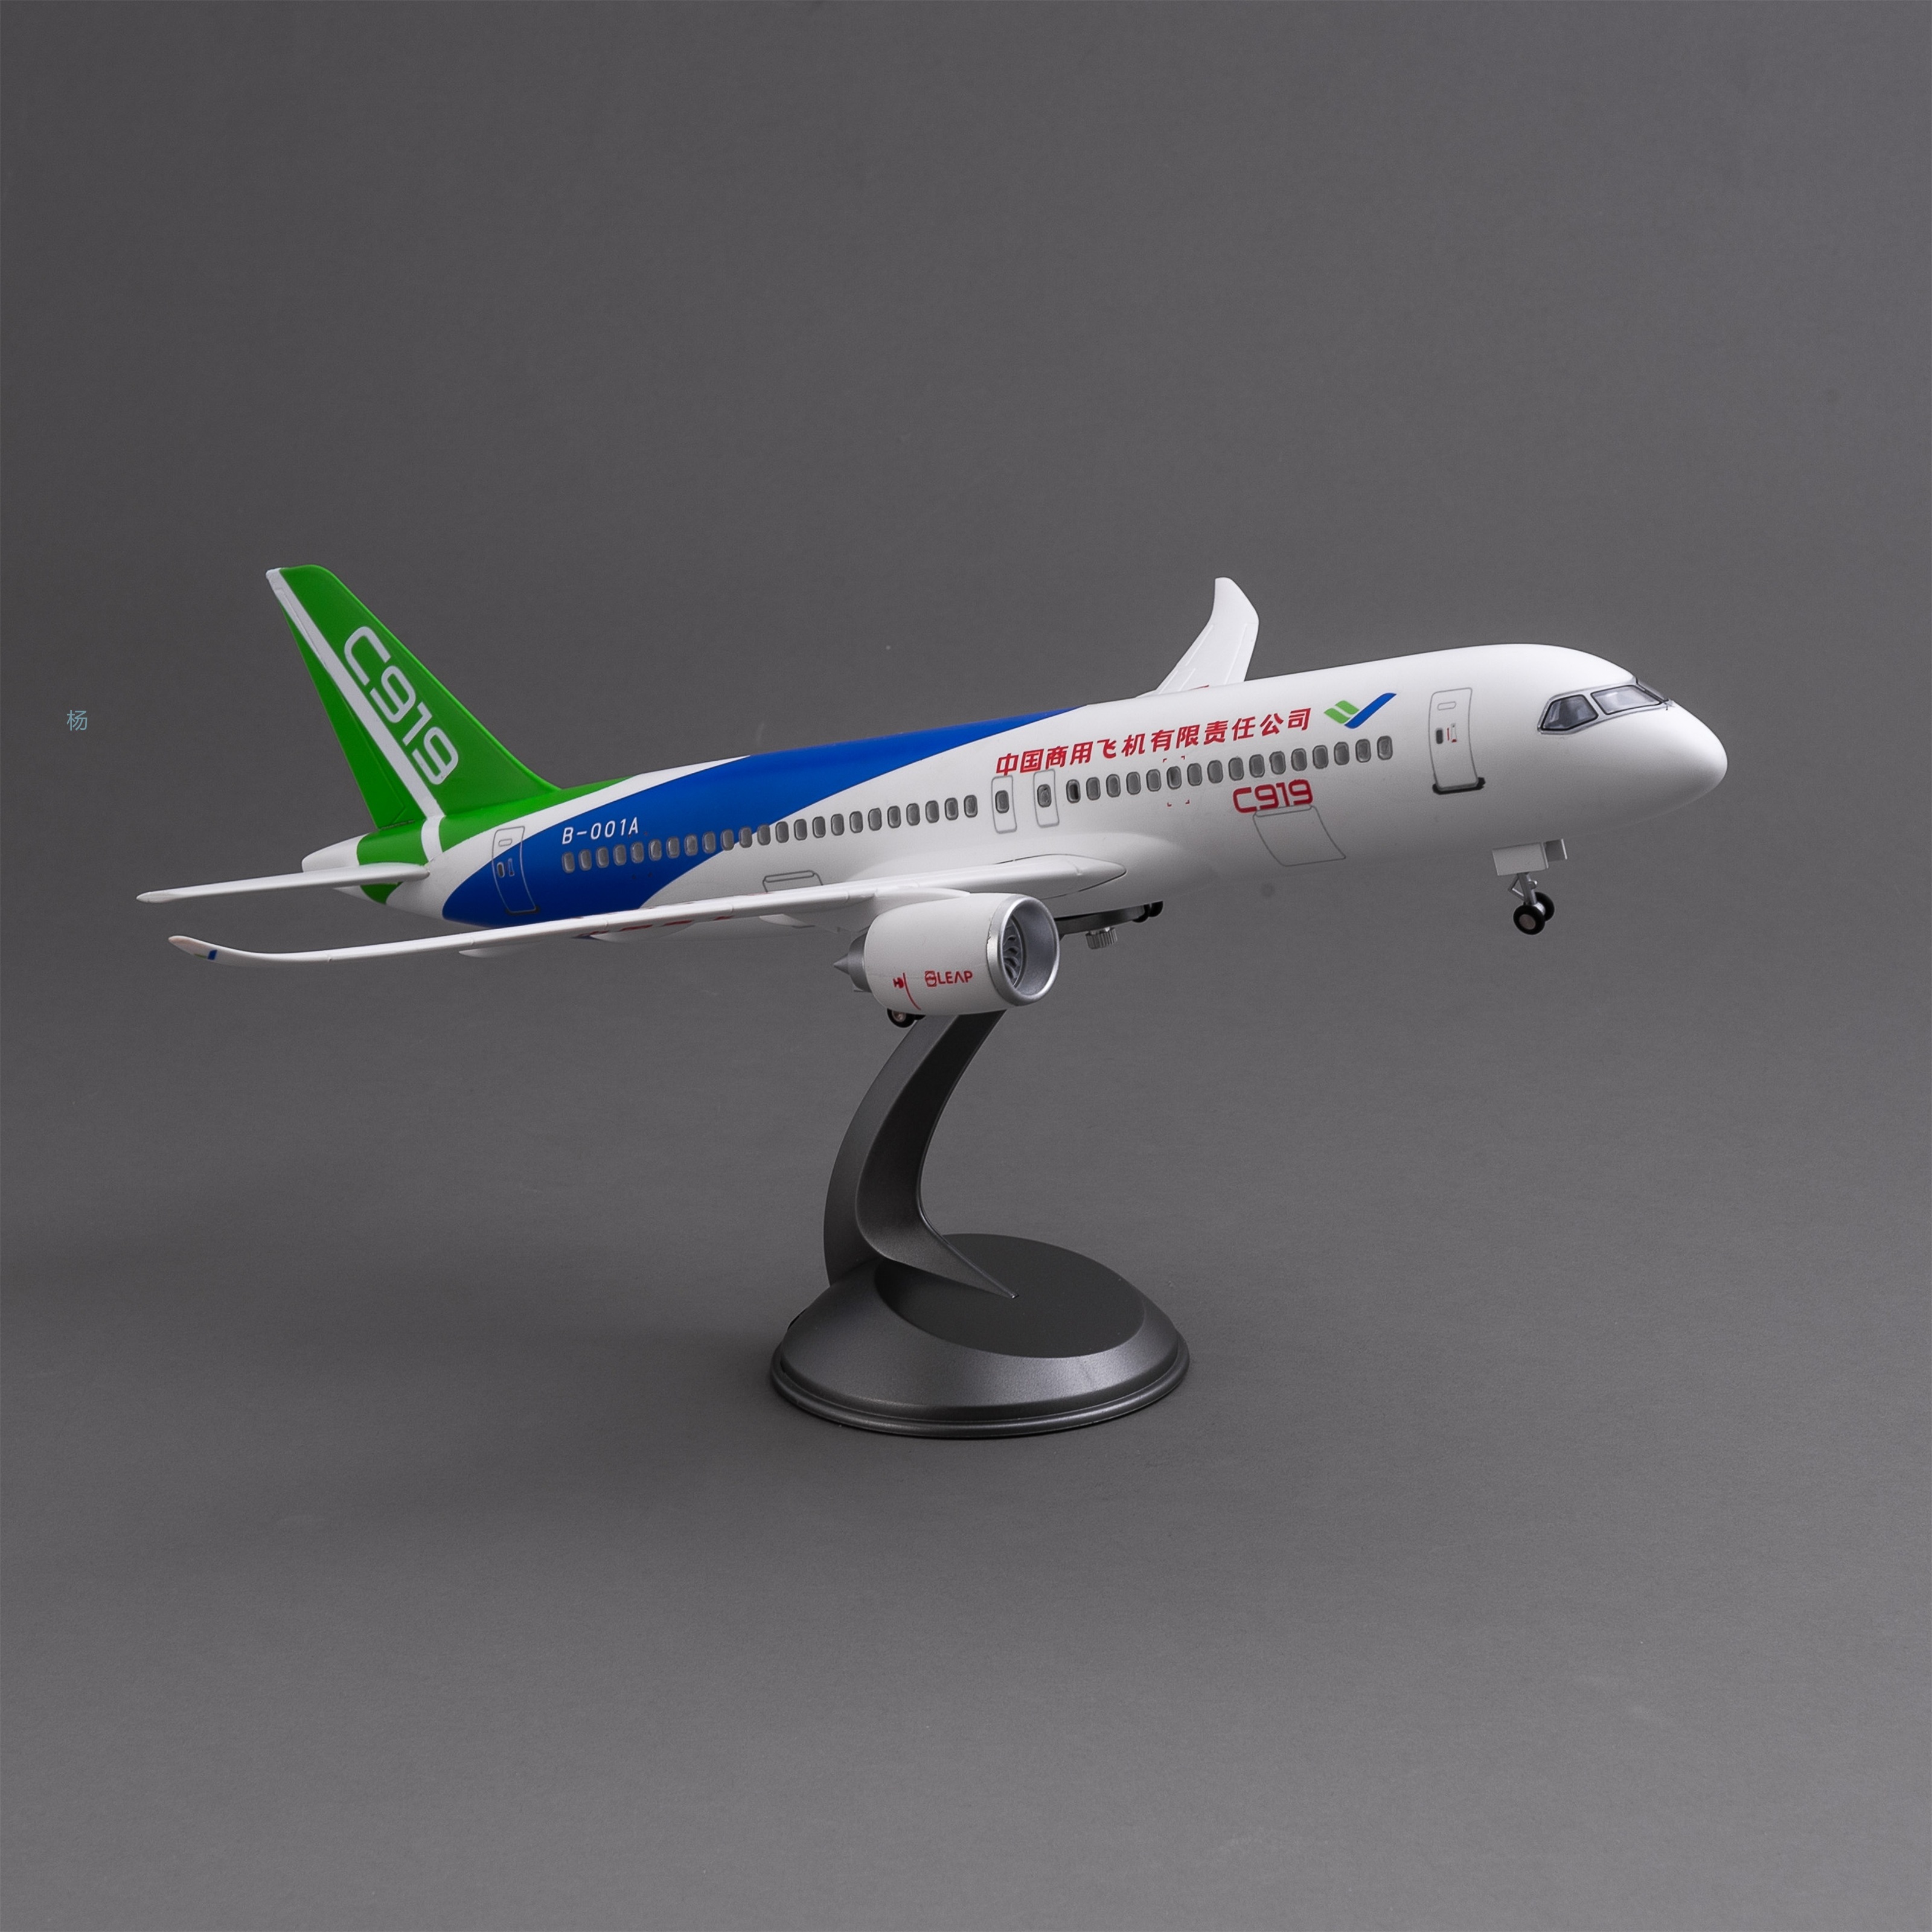 飞机模型（中国商用飞机有限责任公司C919飞机）仿真飞机模型 ABS合成强化树脂飞机模型航空飞机模型详情2